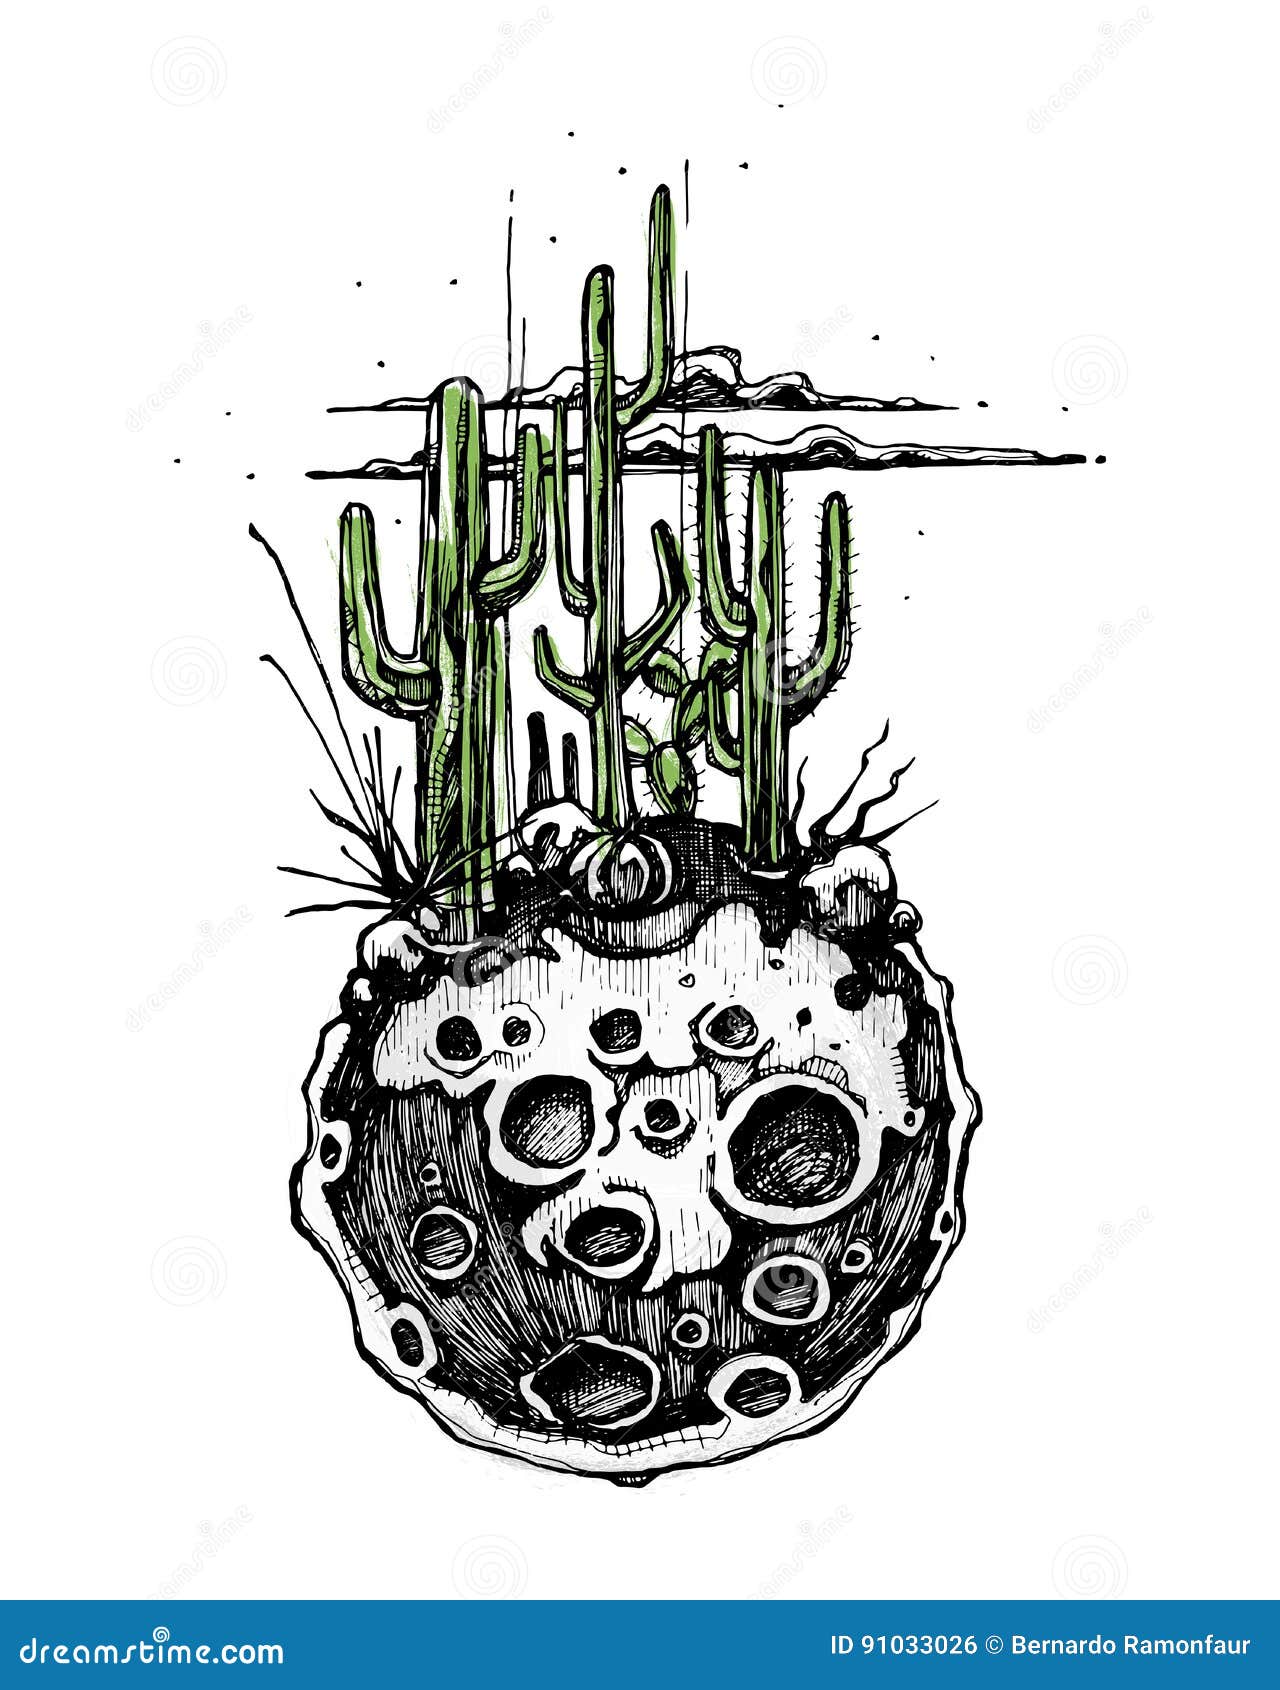 Um desenho preto e branco de um cacto com um vaso de plantas nele.